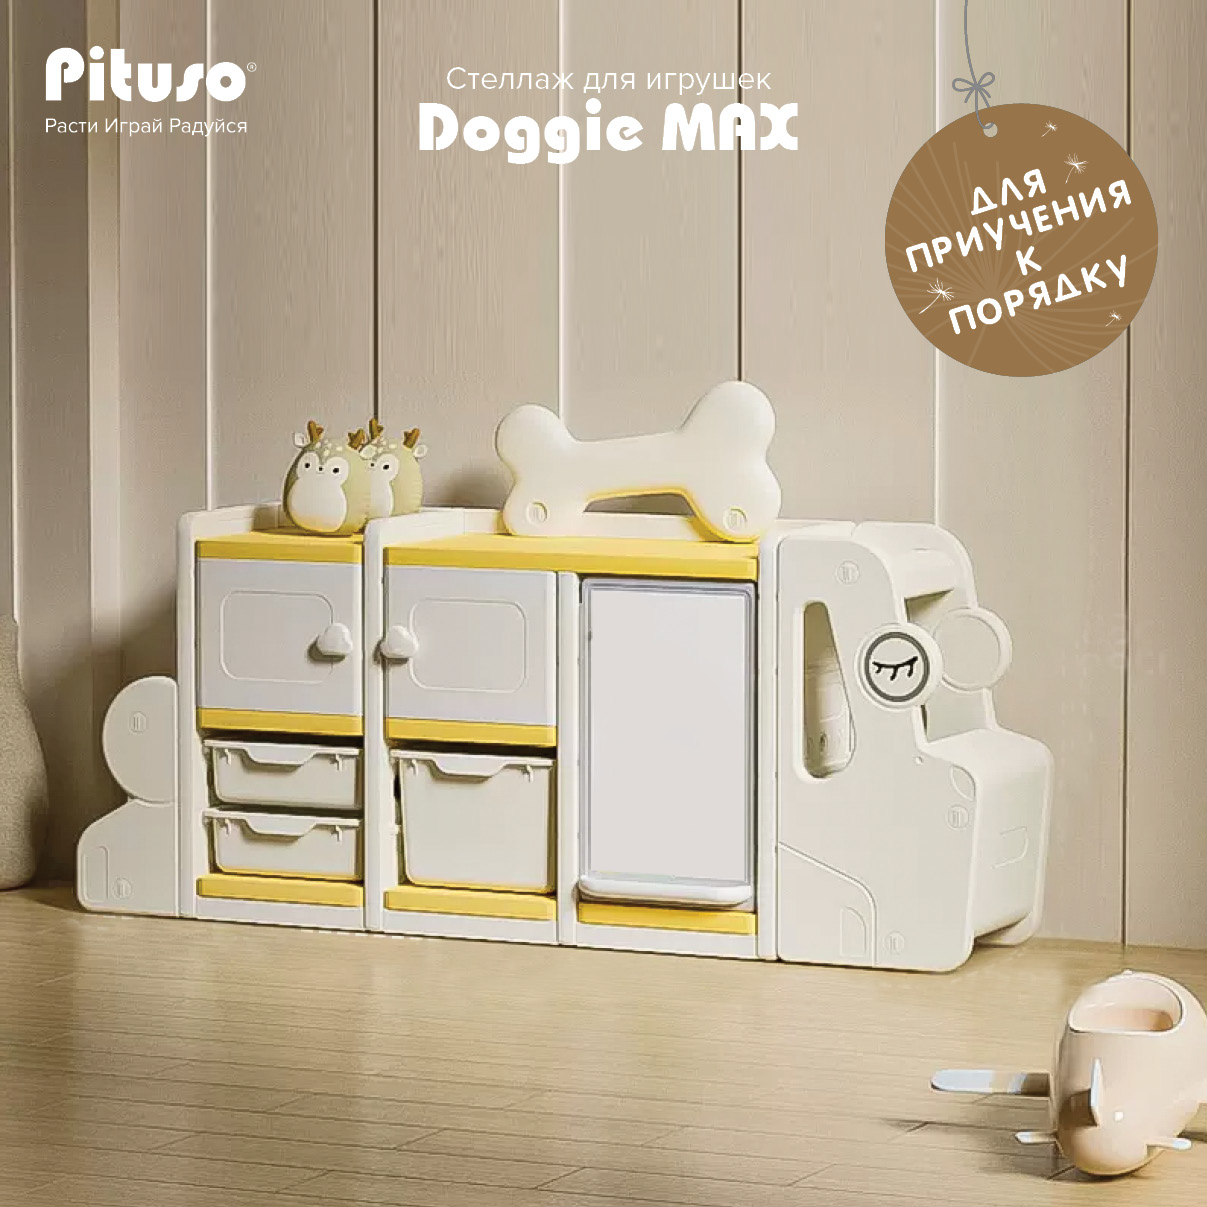 Стеллаж для игрушек с ящиками Pituso Doggie Max, доска для рисования, бежевый, желтый стеллаж для игрушек edu play 3 полки бежевый